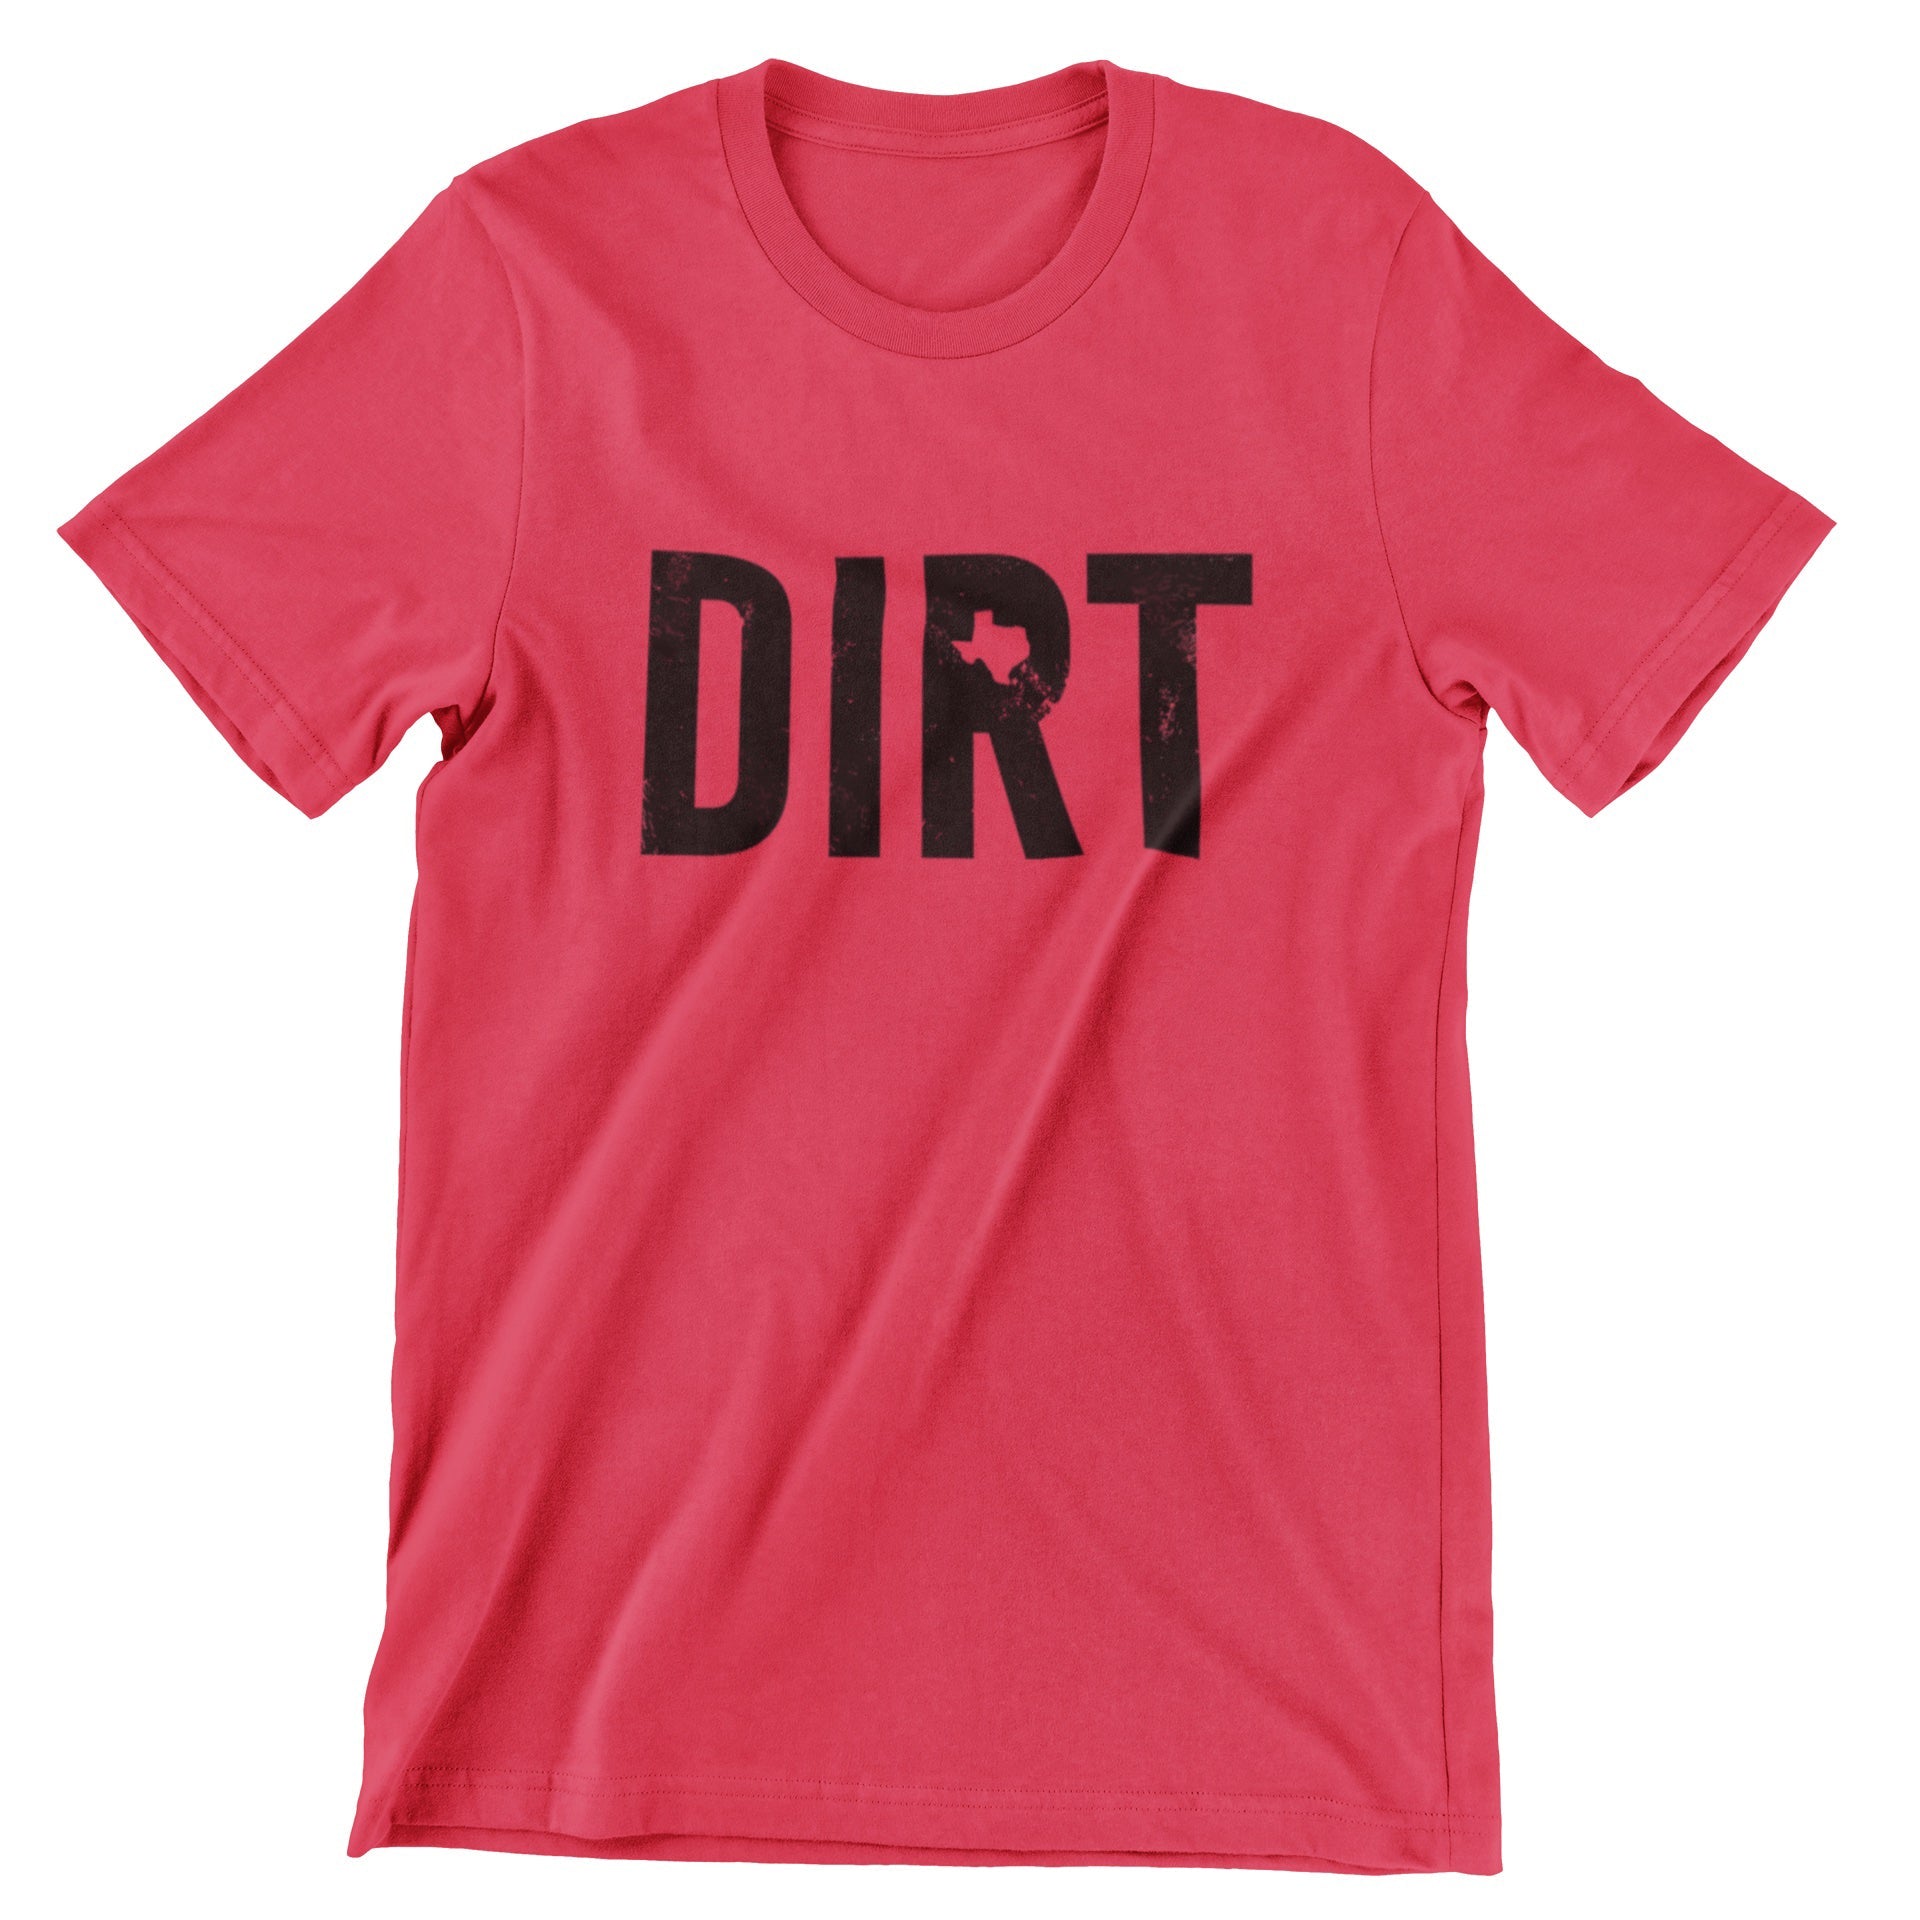 The Dirt Shirt